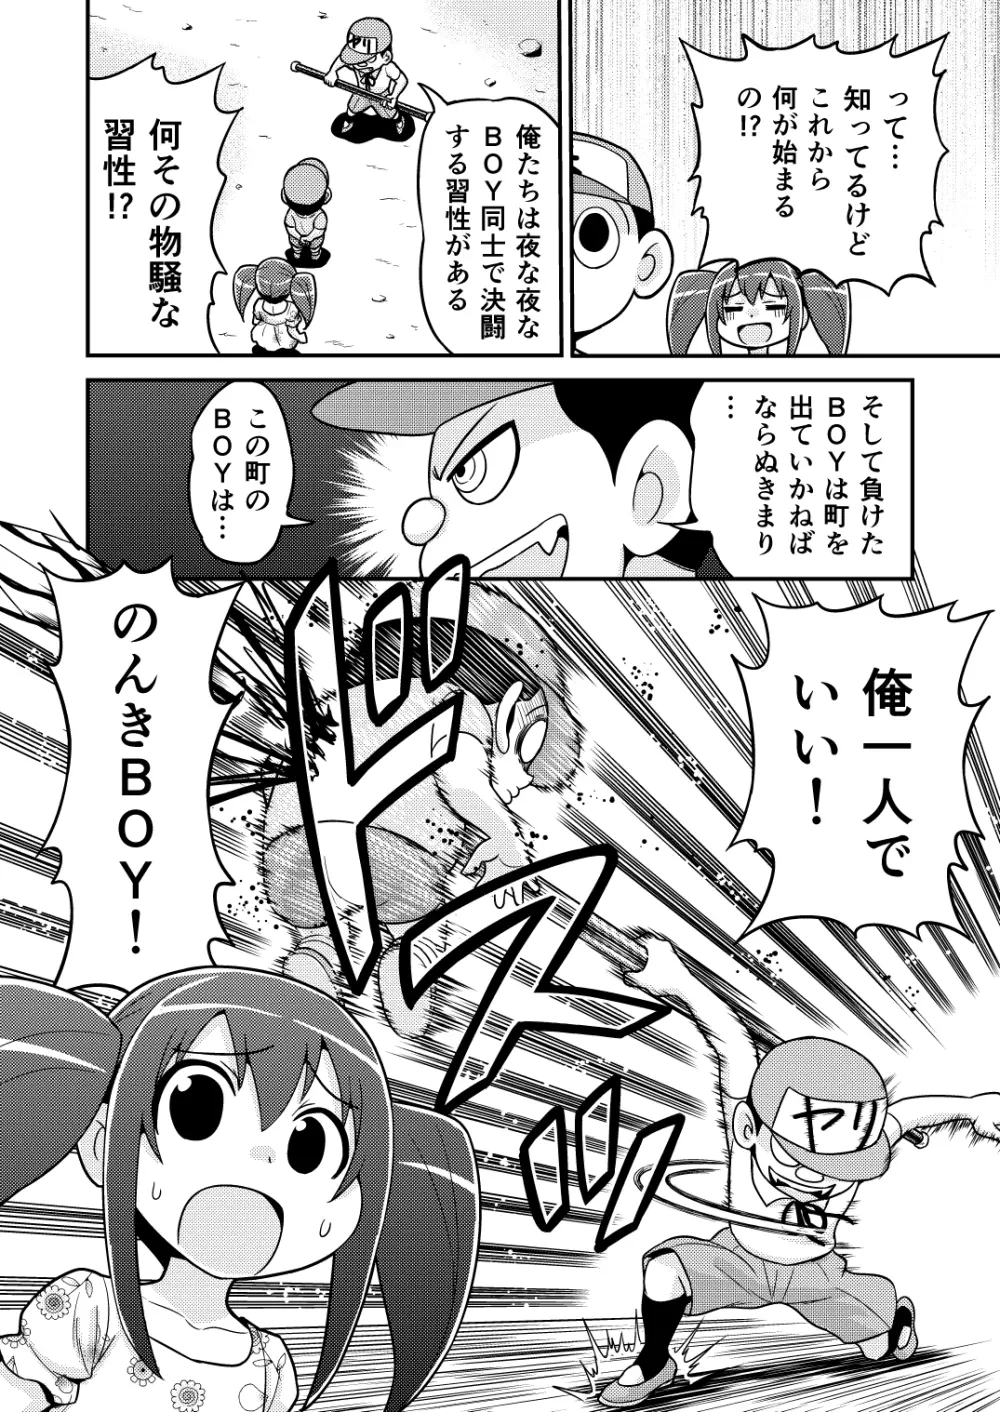 のんきBOY 1-48 - page61